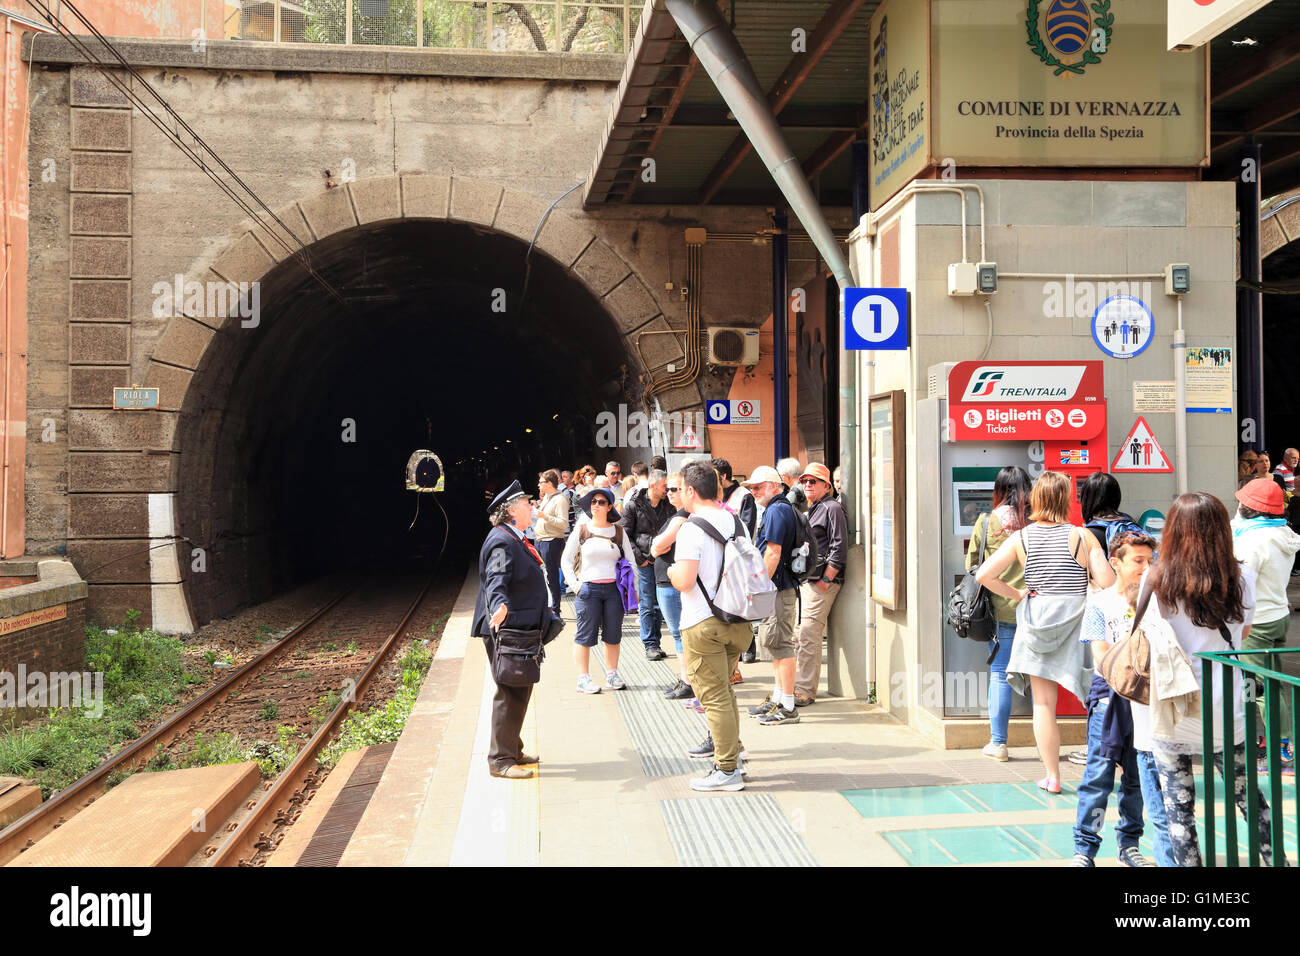 Vernazza tunnel train station, Cinque Terre, Liguria, Italy Stock Photo